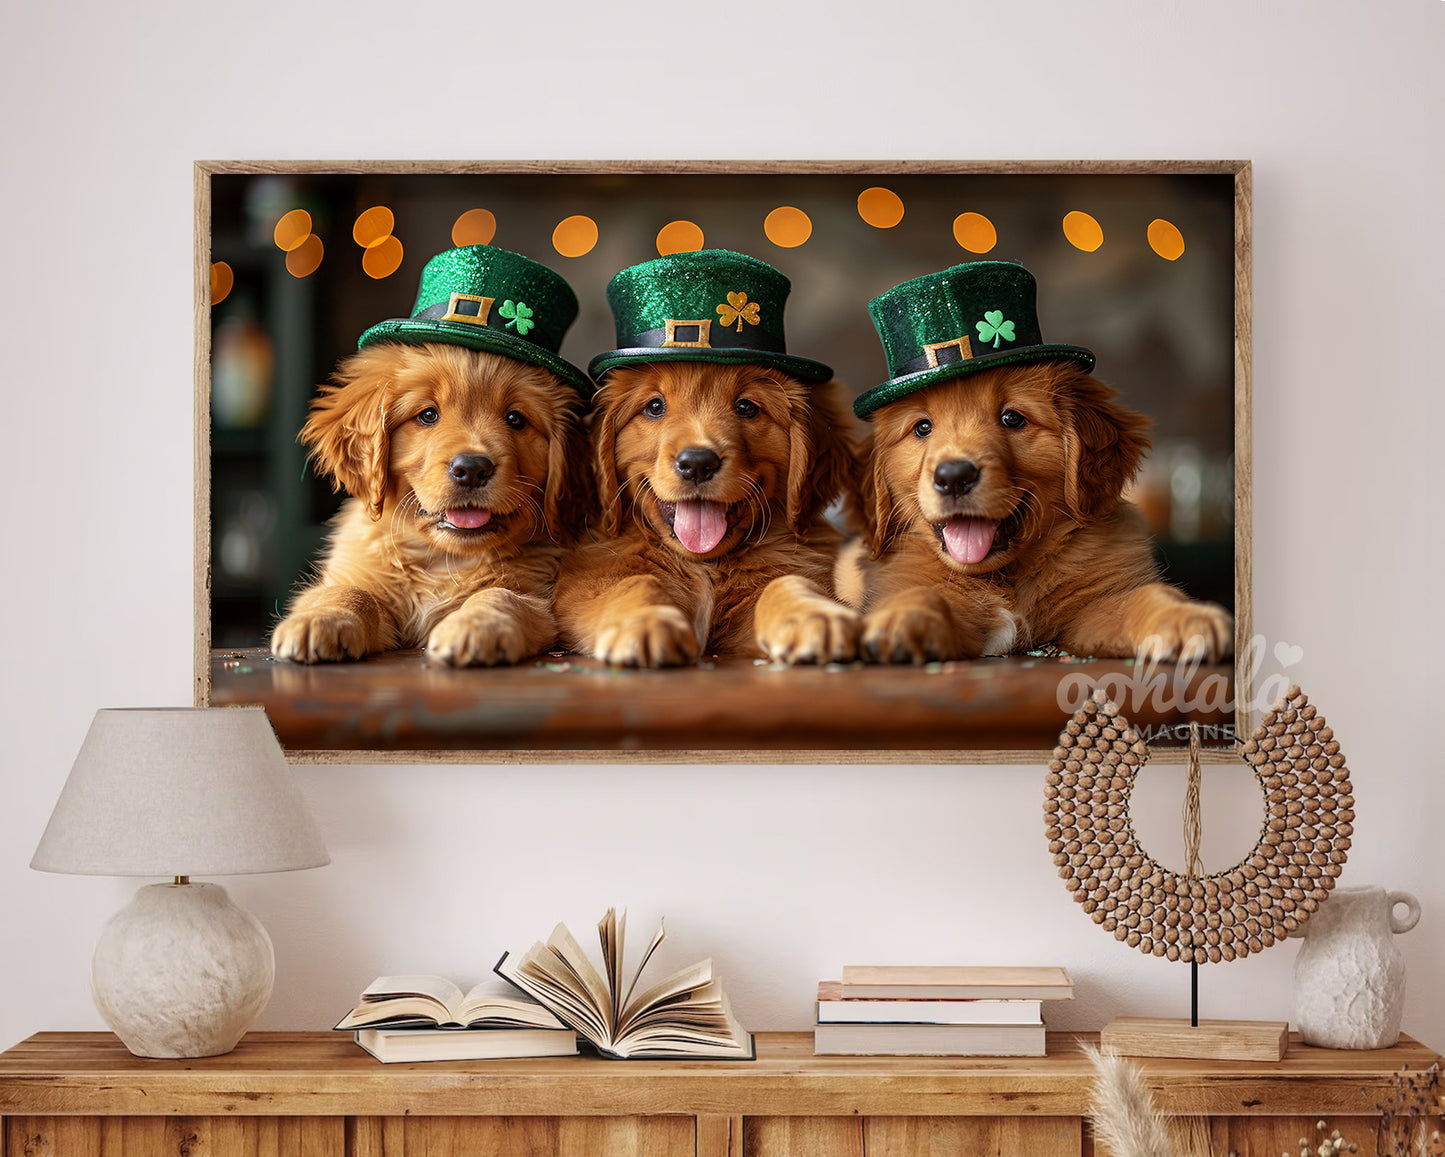 Cute Golden Retriever Puppies St. Patrick's Day Frame TV Art Wallpaper